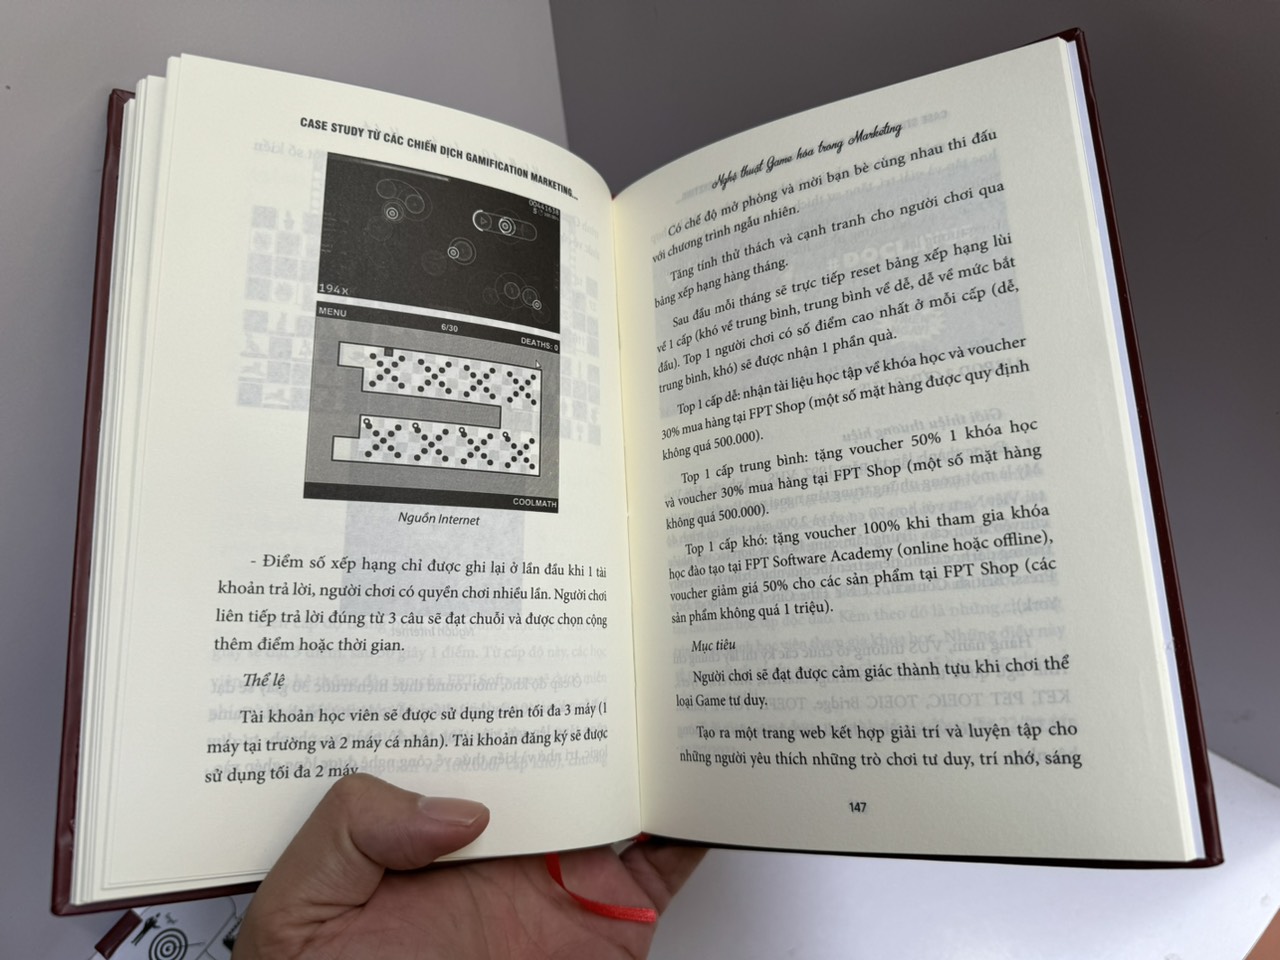 [Bìa cứng] Combo 2 cuốn nghệ thuật Marketing - STORYTELLING MARKETING - NGHỆ THUẬT KỂ CHUYỆN TRONG MARKETING - GAMIFICATION MARKETING - NGHỆ THUẬT GAME HÓA TRONG MARKETING - Nguyễn Vũ Huy Hoàng - Mochi Books - NXB Lao Động.